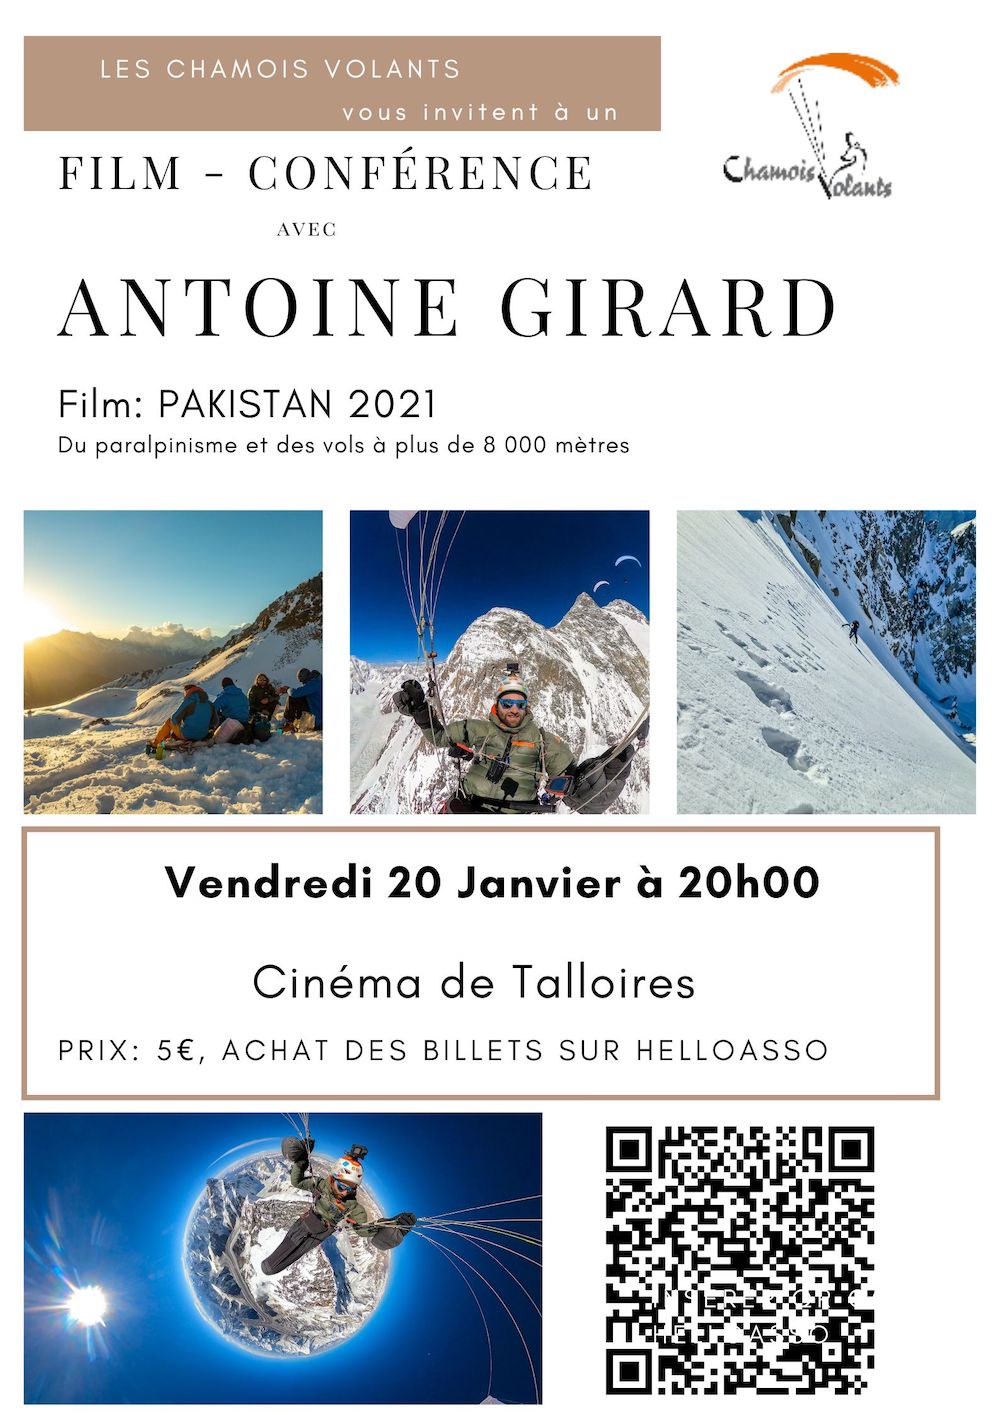 Antoine Girard affiche 20 janvier 2013 cinéma de Talloires